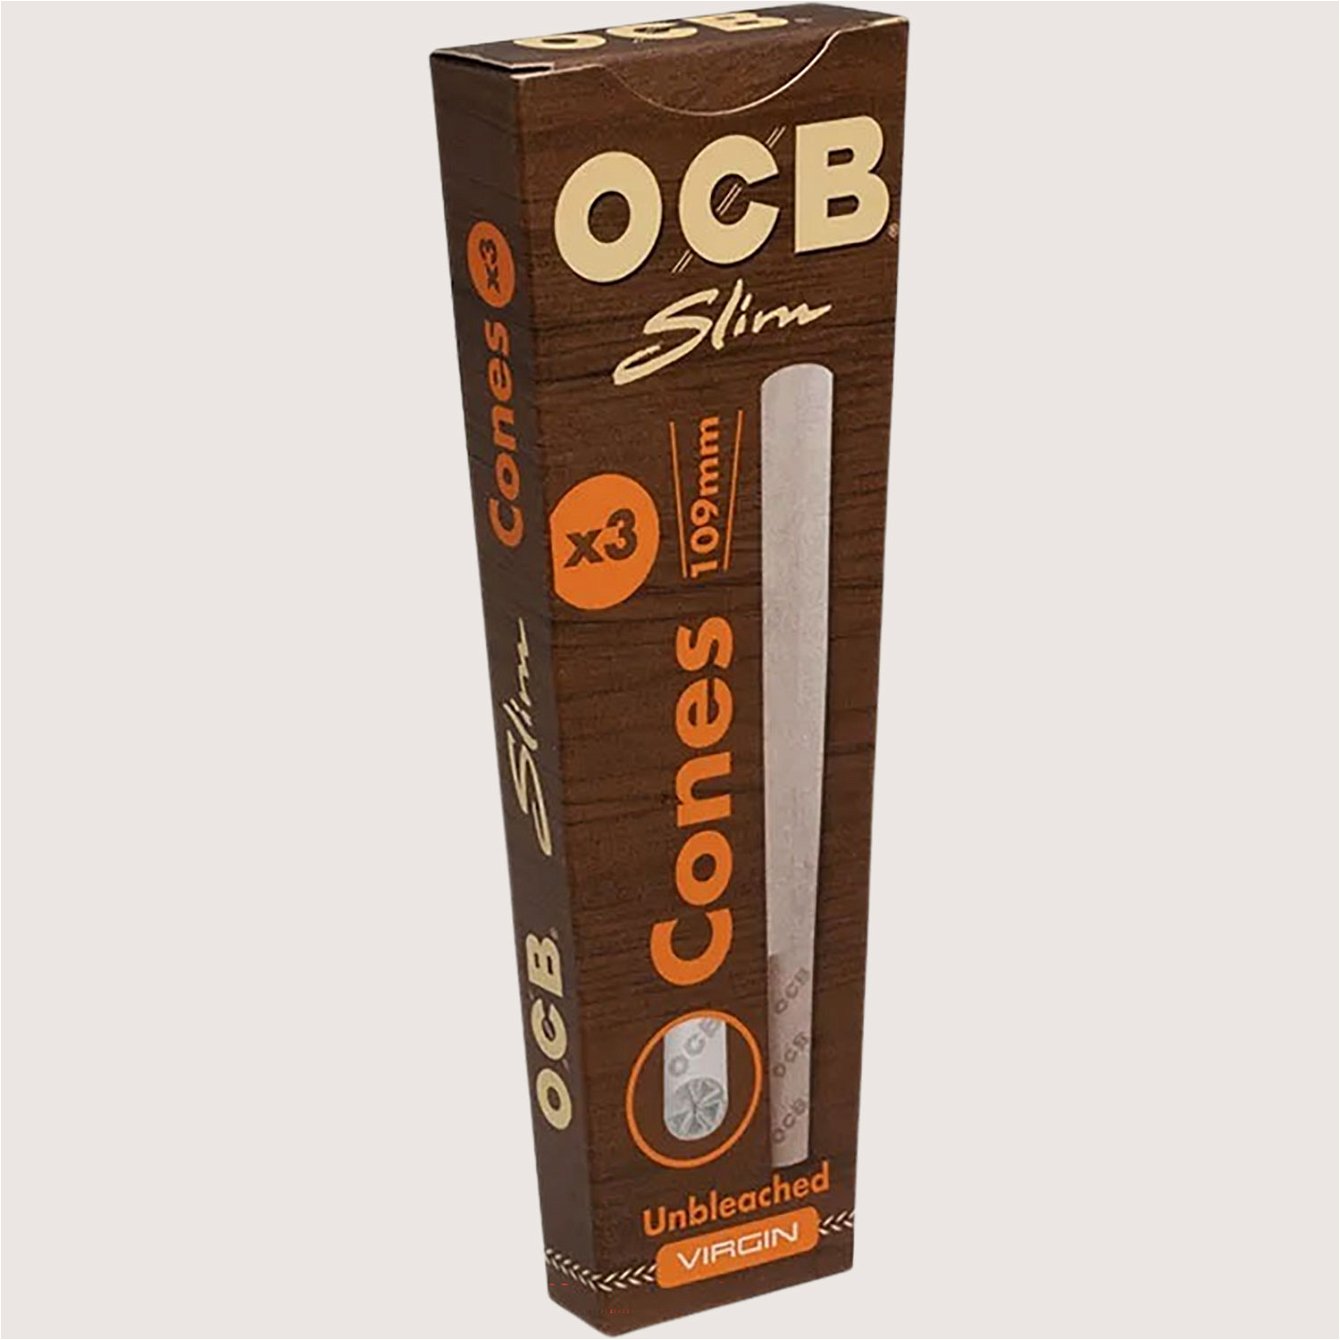 OCB Unbleached 3 Cones